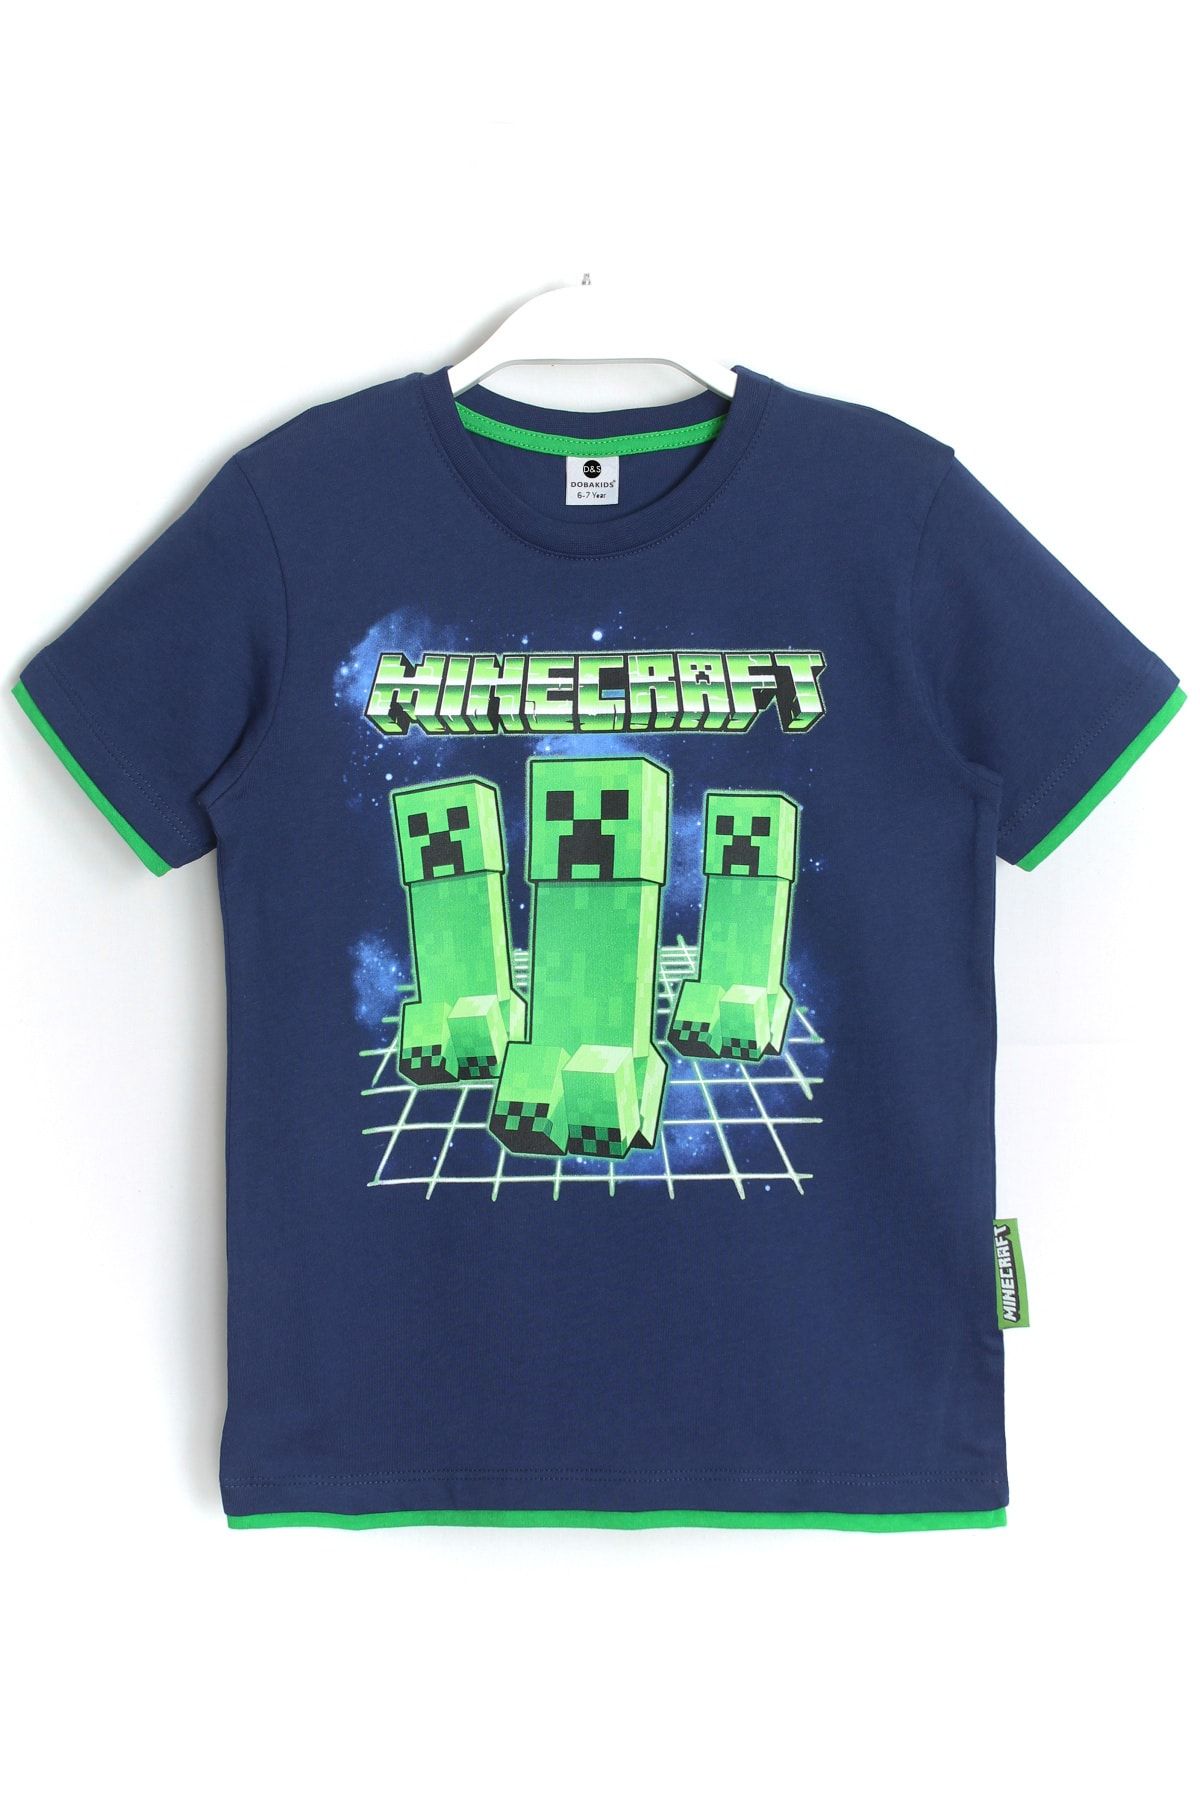 DobaKids Biye Detaylı Erkek Çocuk Minecraft Creeper Baskılı T-shirt Lacivert